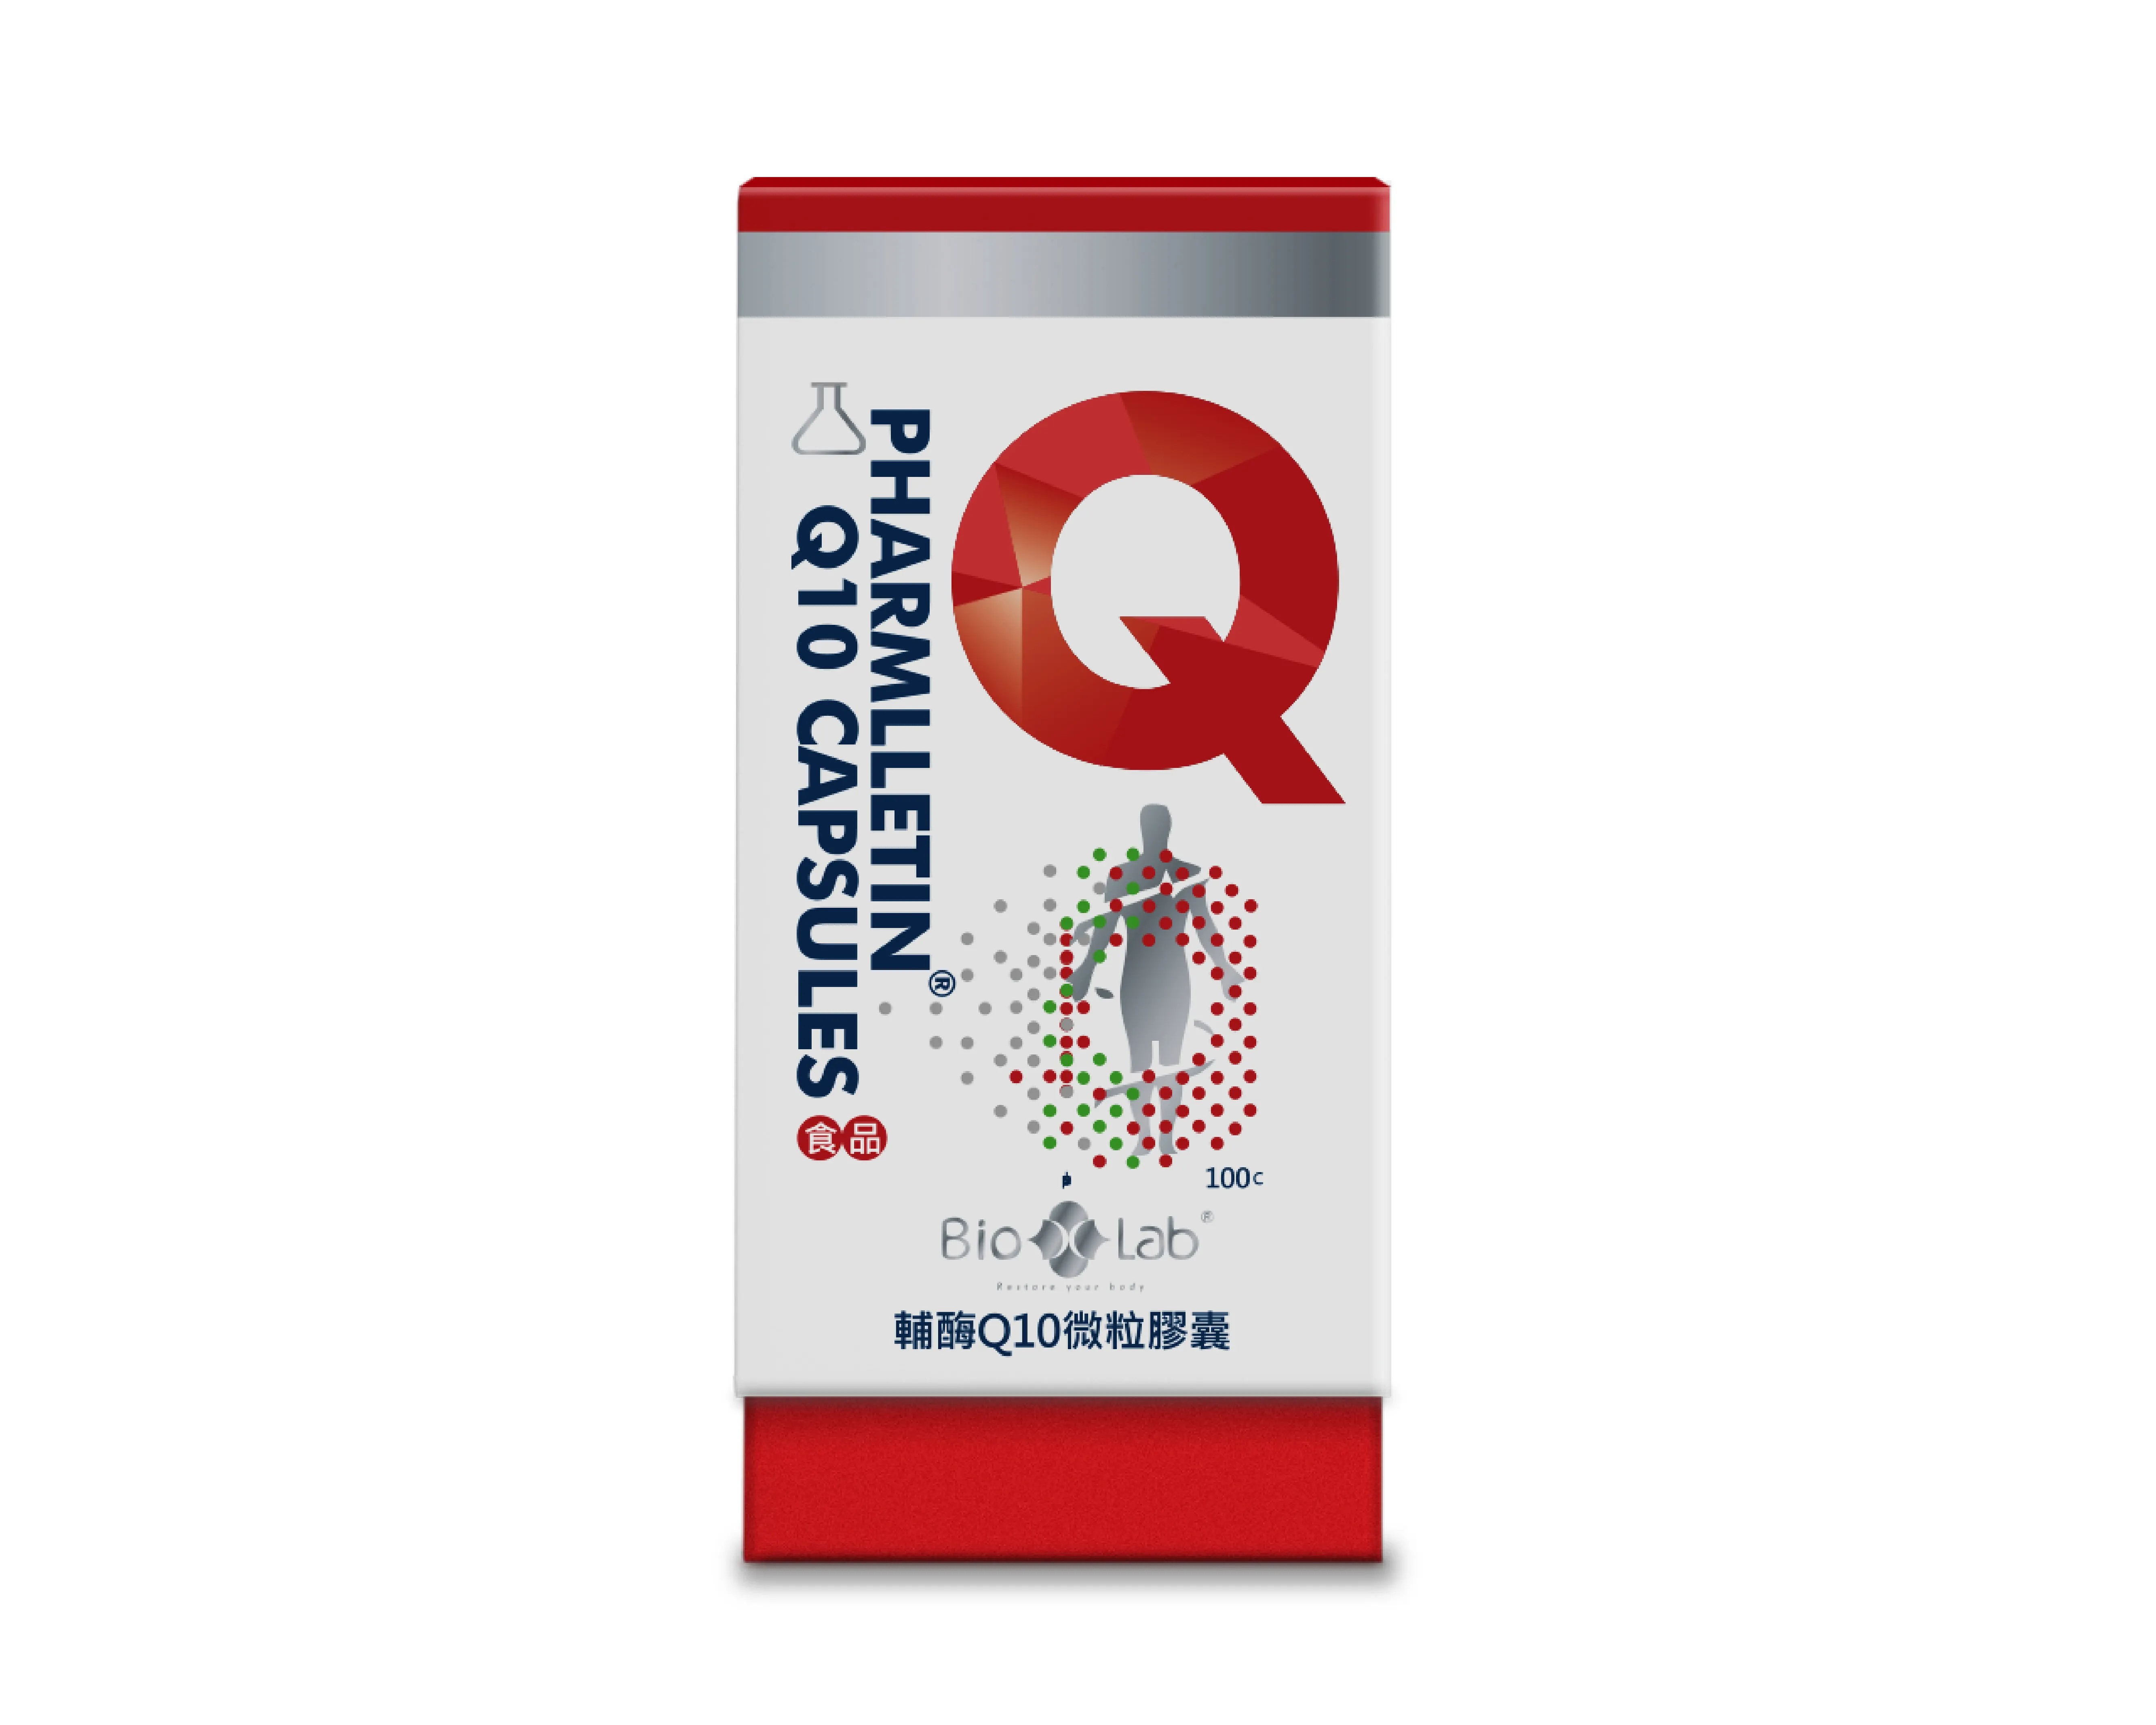 كبسولات حبيبات كوينزيم Q10 من ubidecarenone لخفض الدهون ذات جودة فاخرة للتصدير